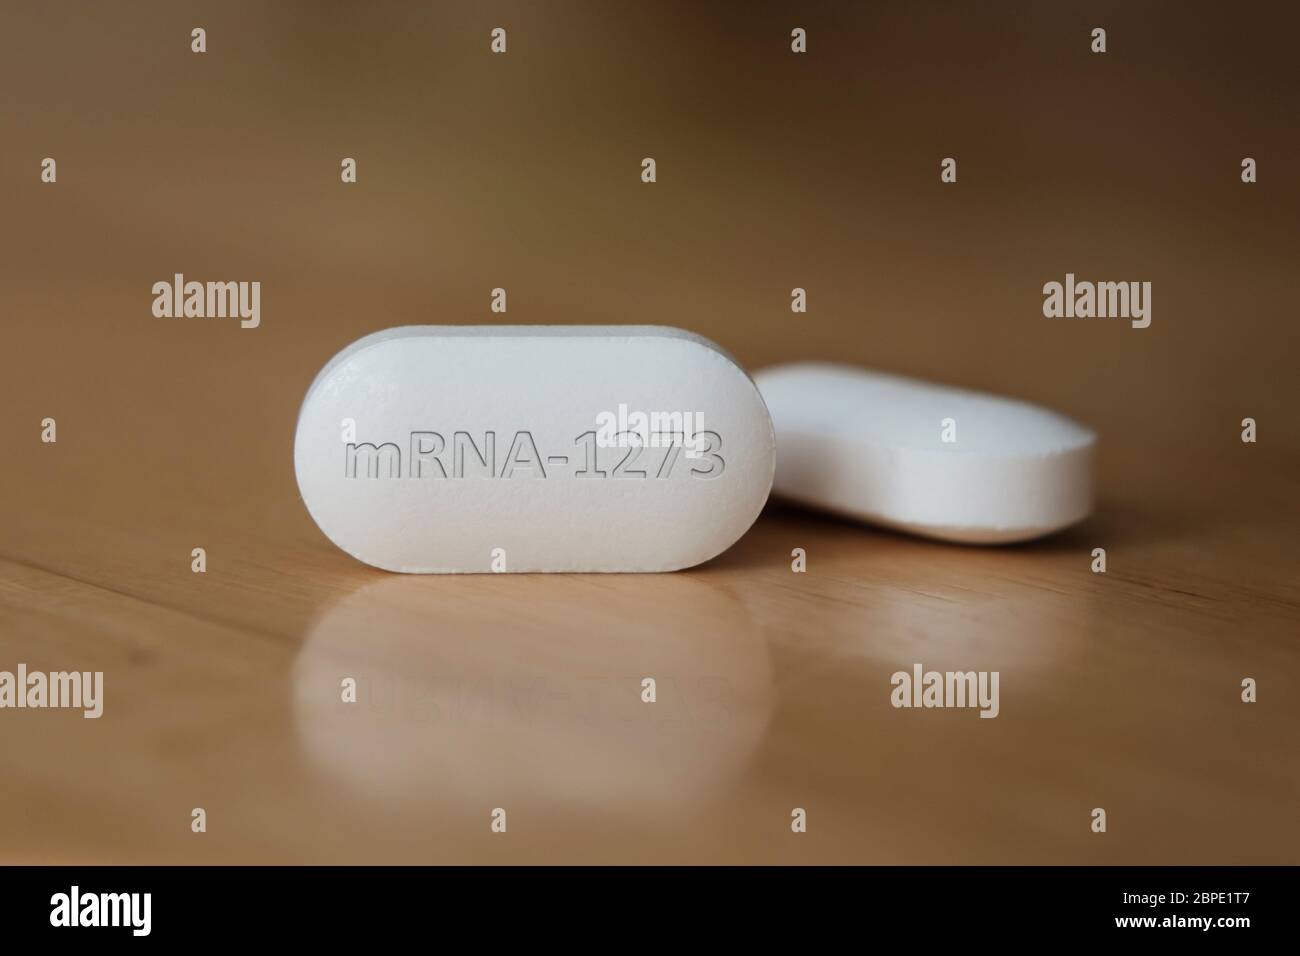 MRNA-1273 pillola sul tavolo. Foto concettuale. Illustrativa per il potenziale farmaco di trattamento COVID-19. Messa a fuoco selettiva, profondità di campo poco profonda. Foto Stock